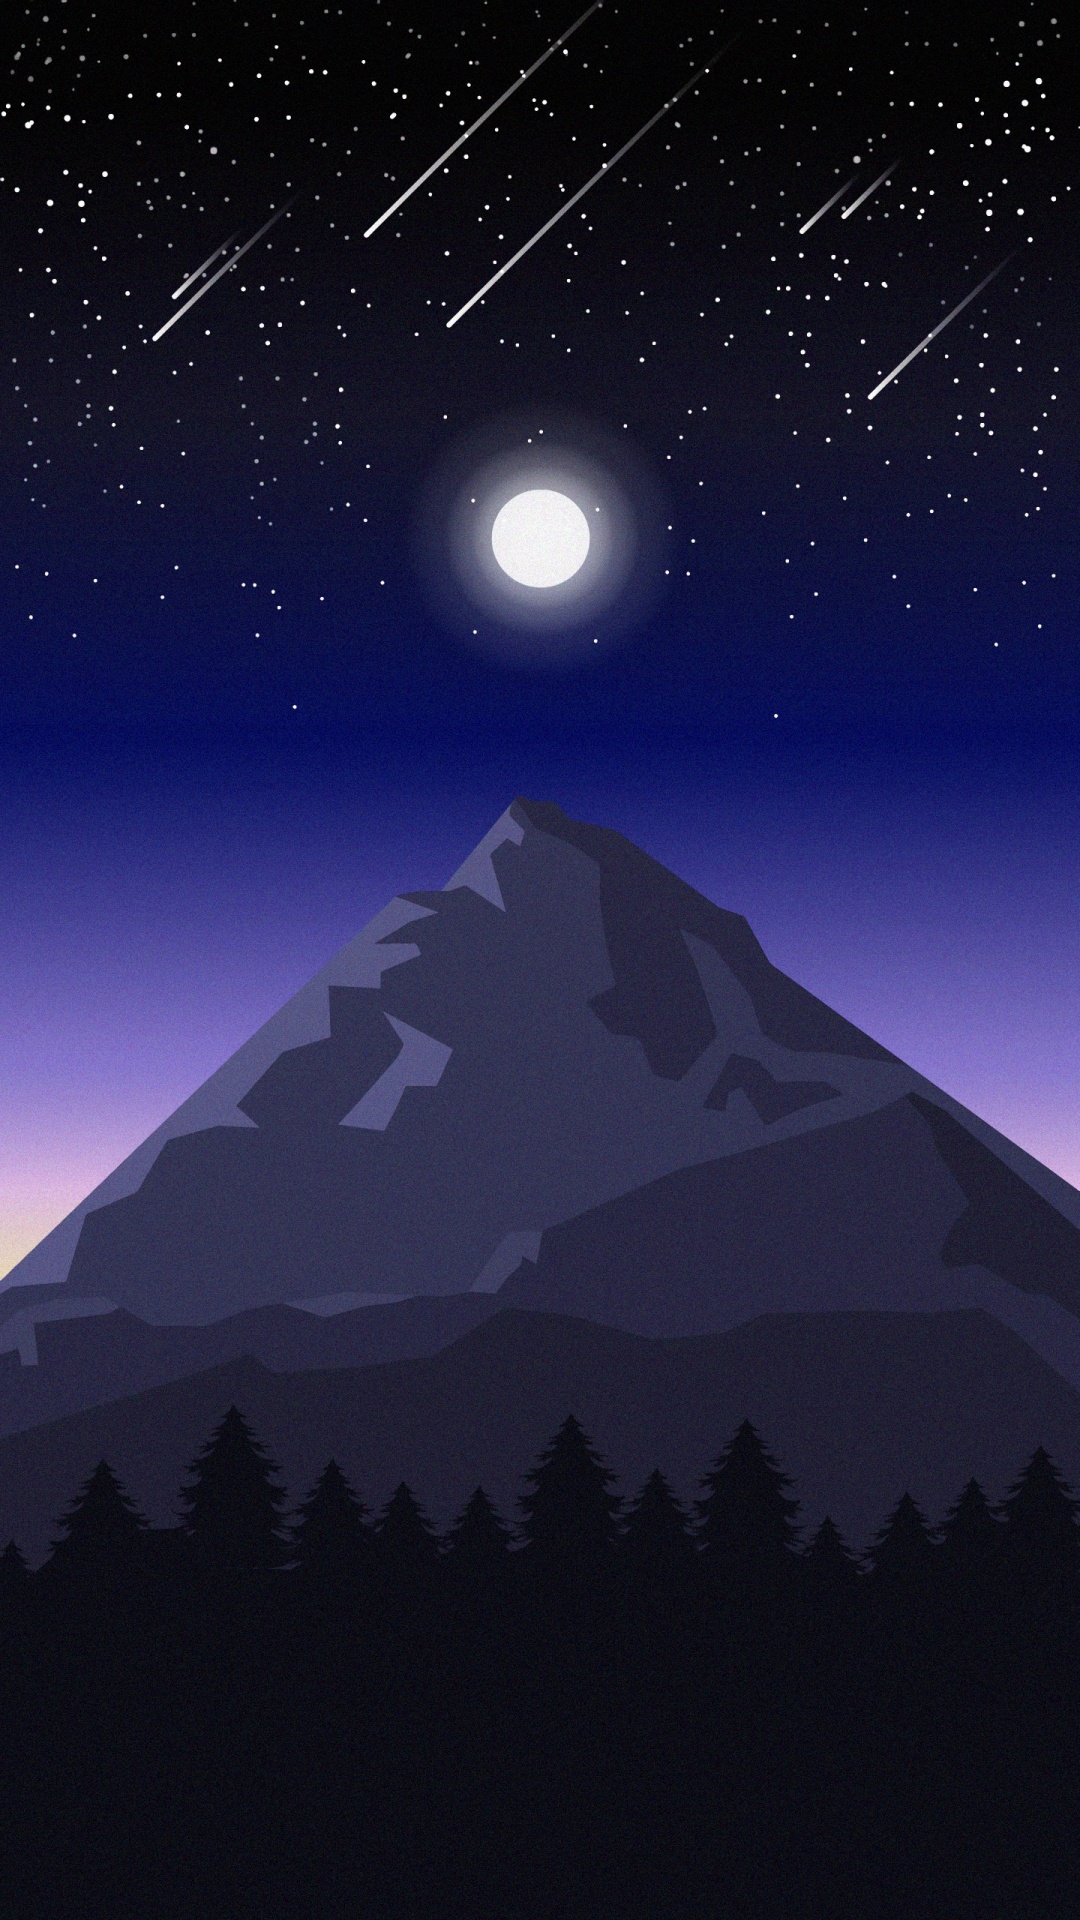 Les Reliefs Montagneux, Lumière, Événement Céleste, Nuit, Objet Astronomique. Wallpaper in 1080x1920 Resolution